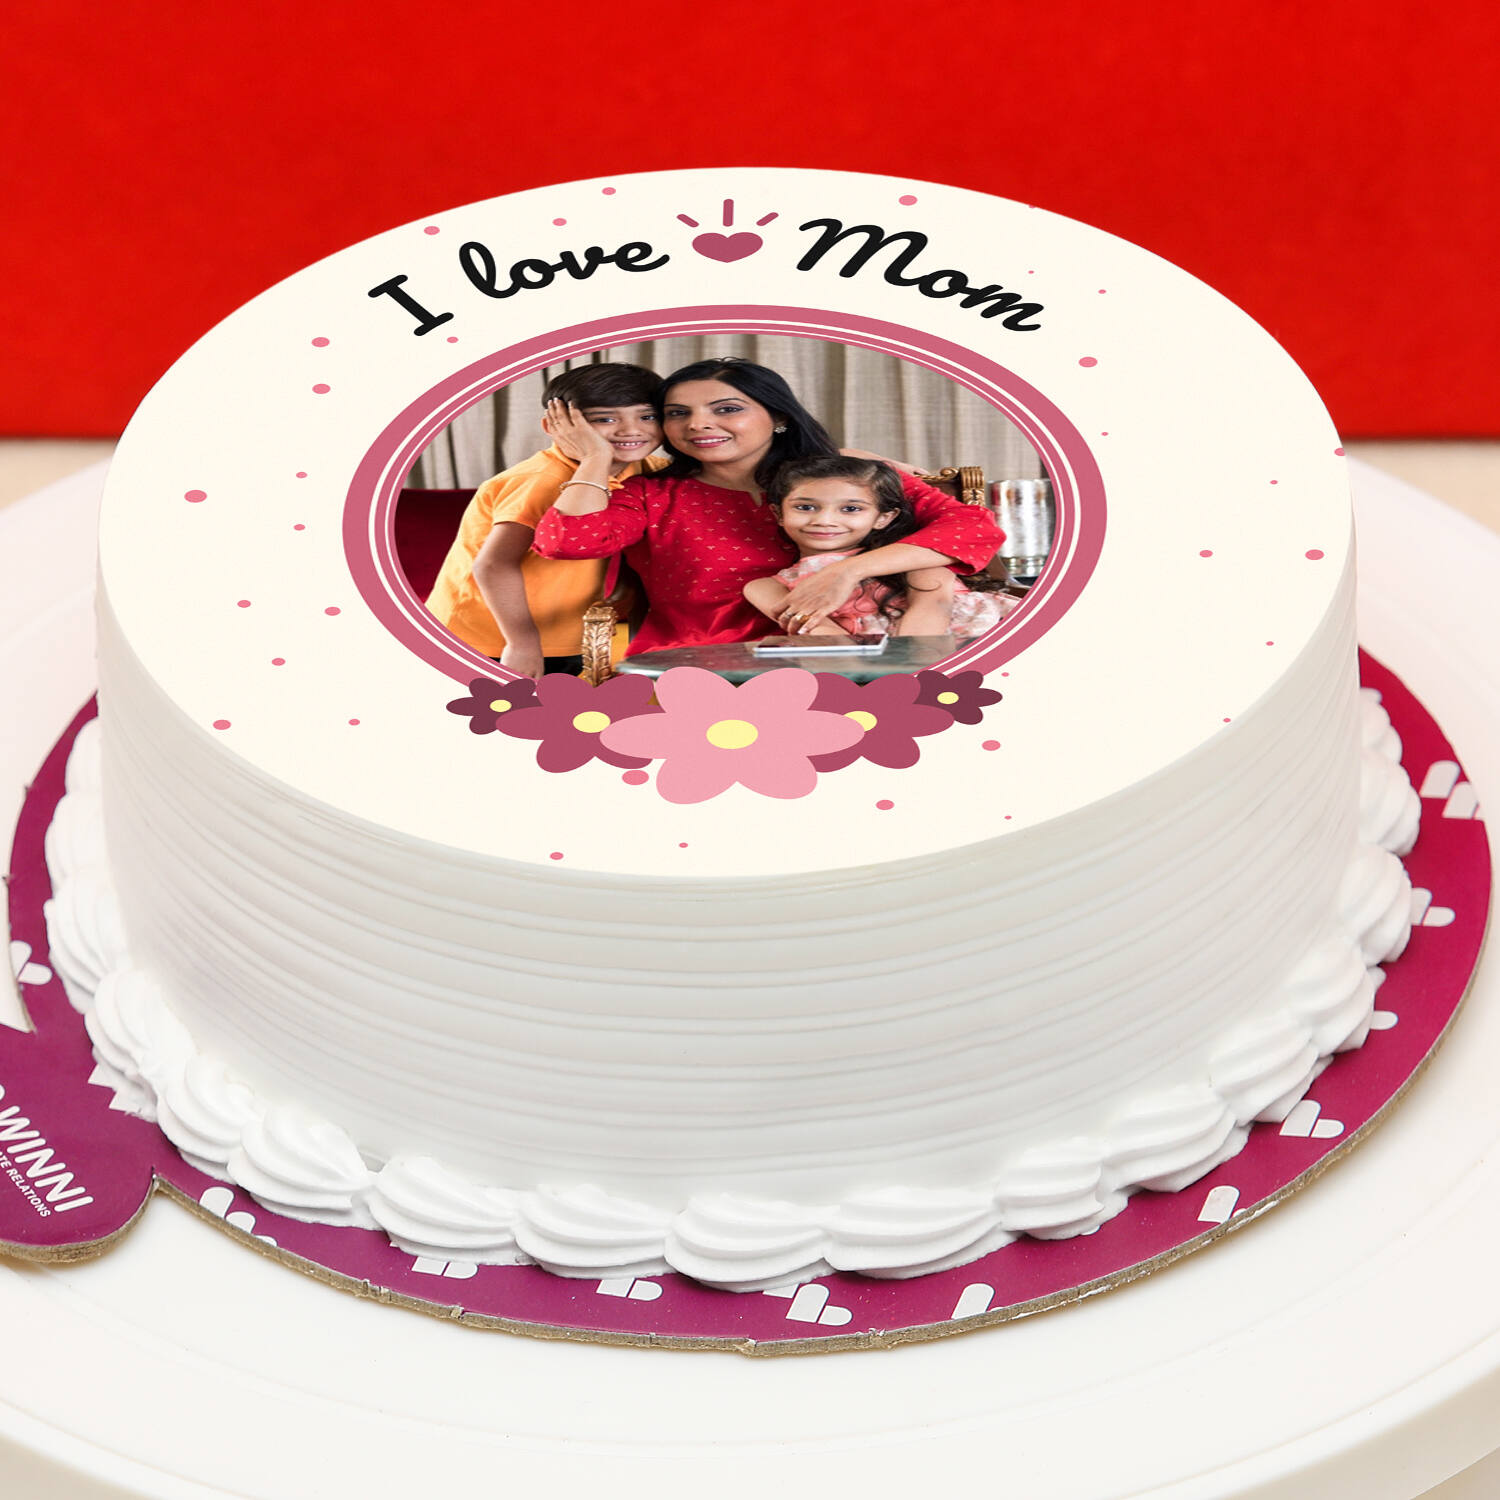 Drip Pink Birthday Cake 9 Anniversary Stock Photo 1295456146 | Shutterstock